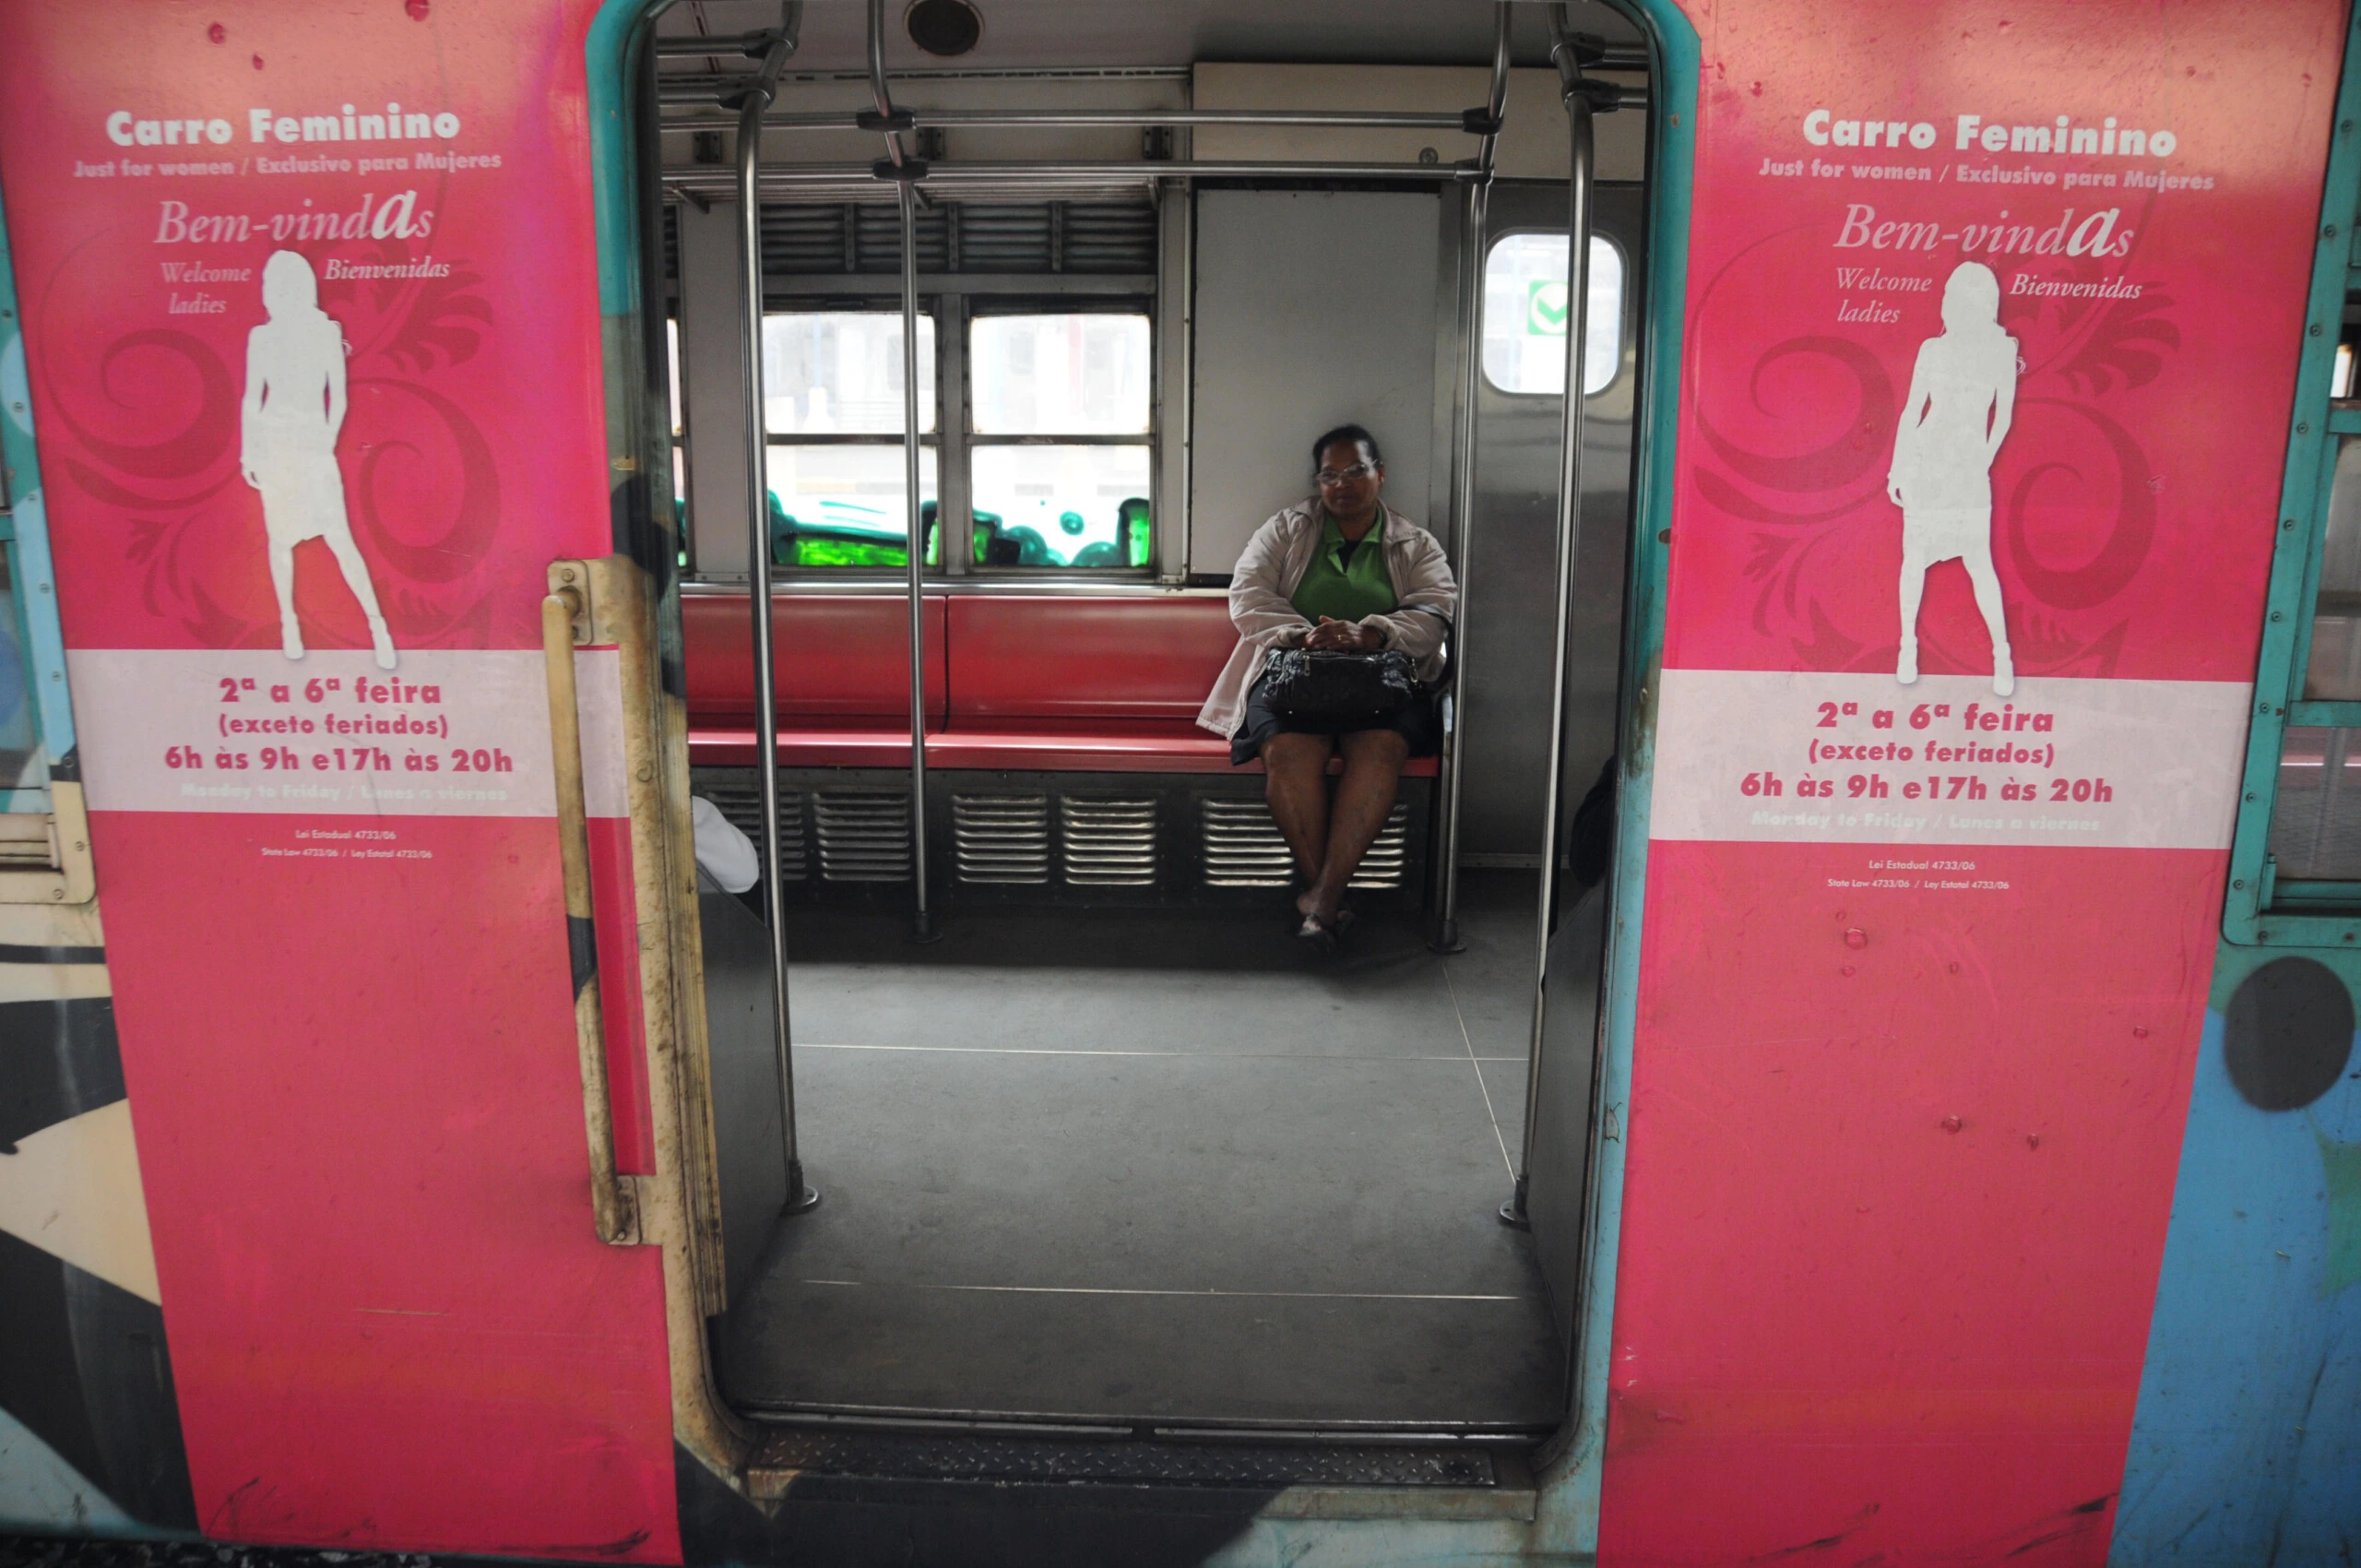 Passageira segue de trem, em vagão especial para mulheres, para a estação Central do Brasil, no Rio de Janeiro, RJ. (Rio de Janeiro, RJ, 05.07.2011. Foto de Giuseppe Bizzarri/Folhapress)